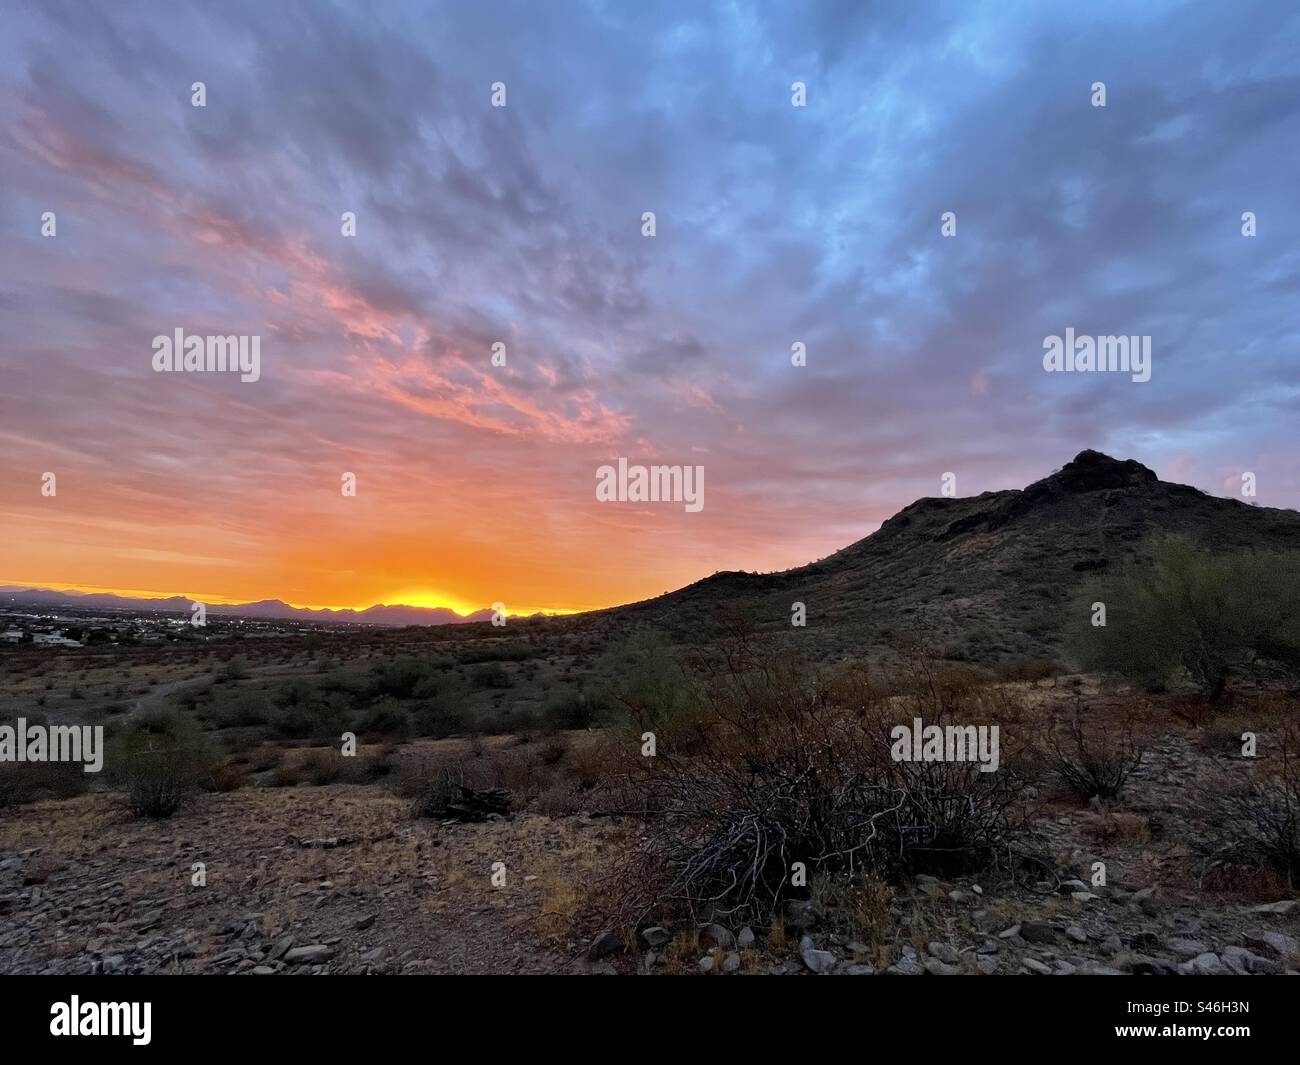 Un halo de soleil levant sur les montagnes McDowell, orange, violet, des rives de nuages en flammes de couleur, profil de Lookout Mountain, désert de Sonoran, Phoenix, Arizona Banque D'Images